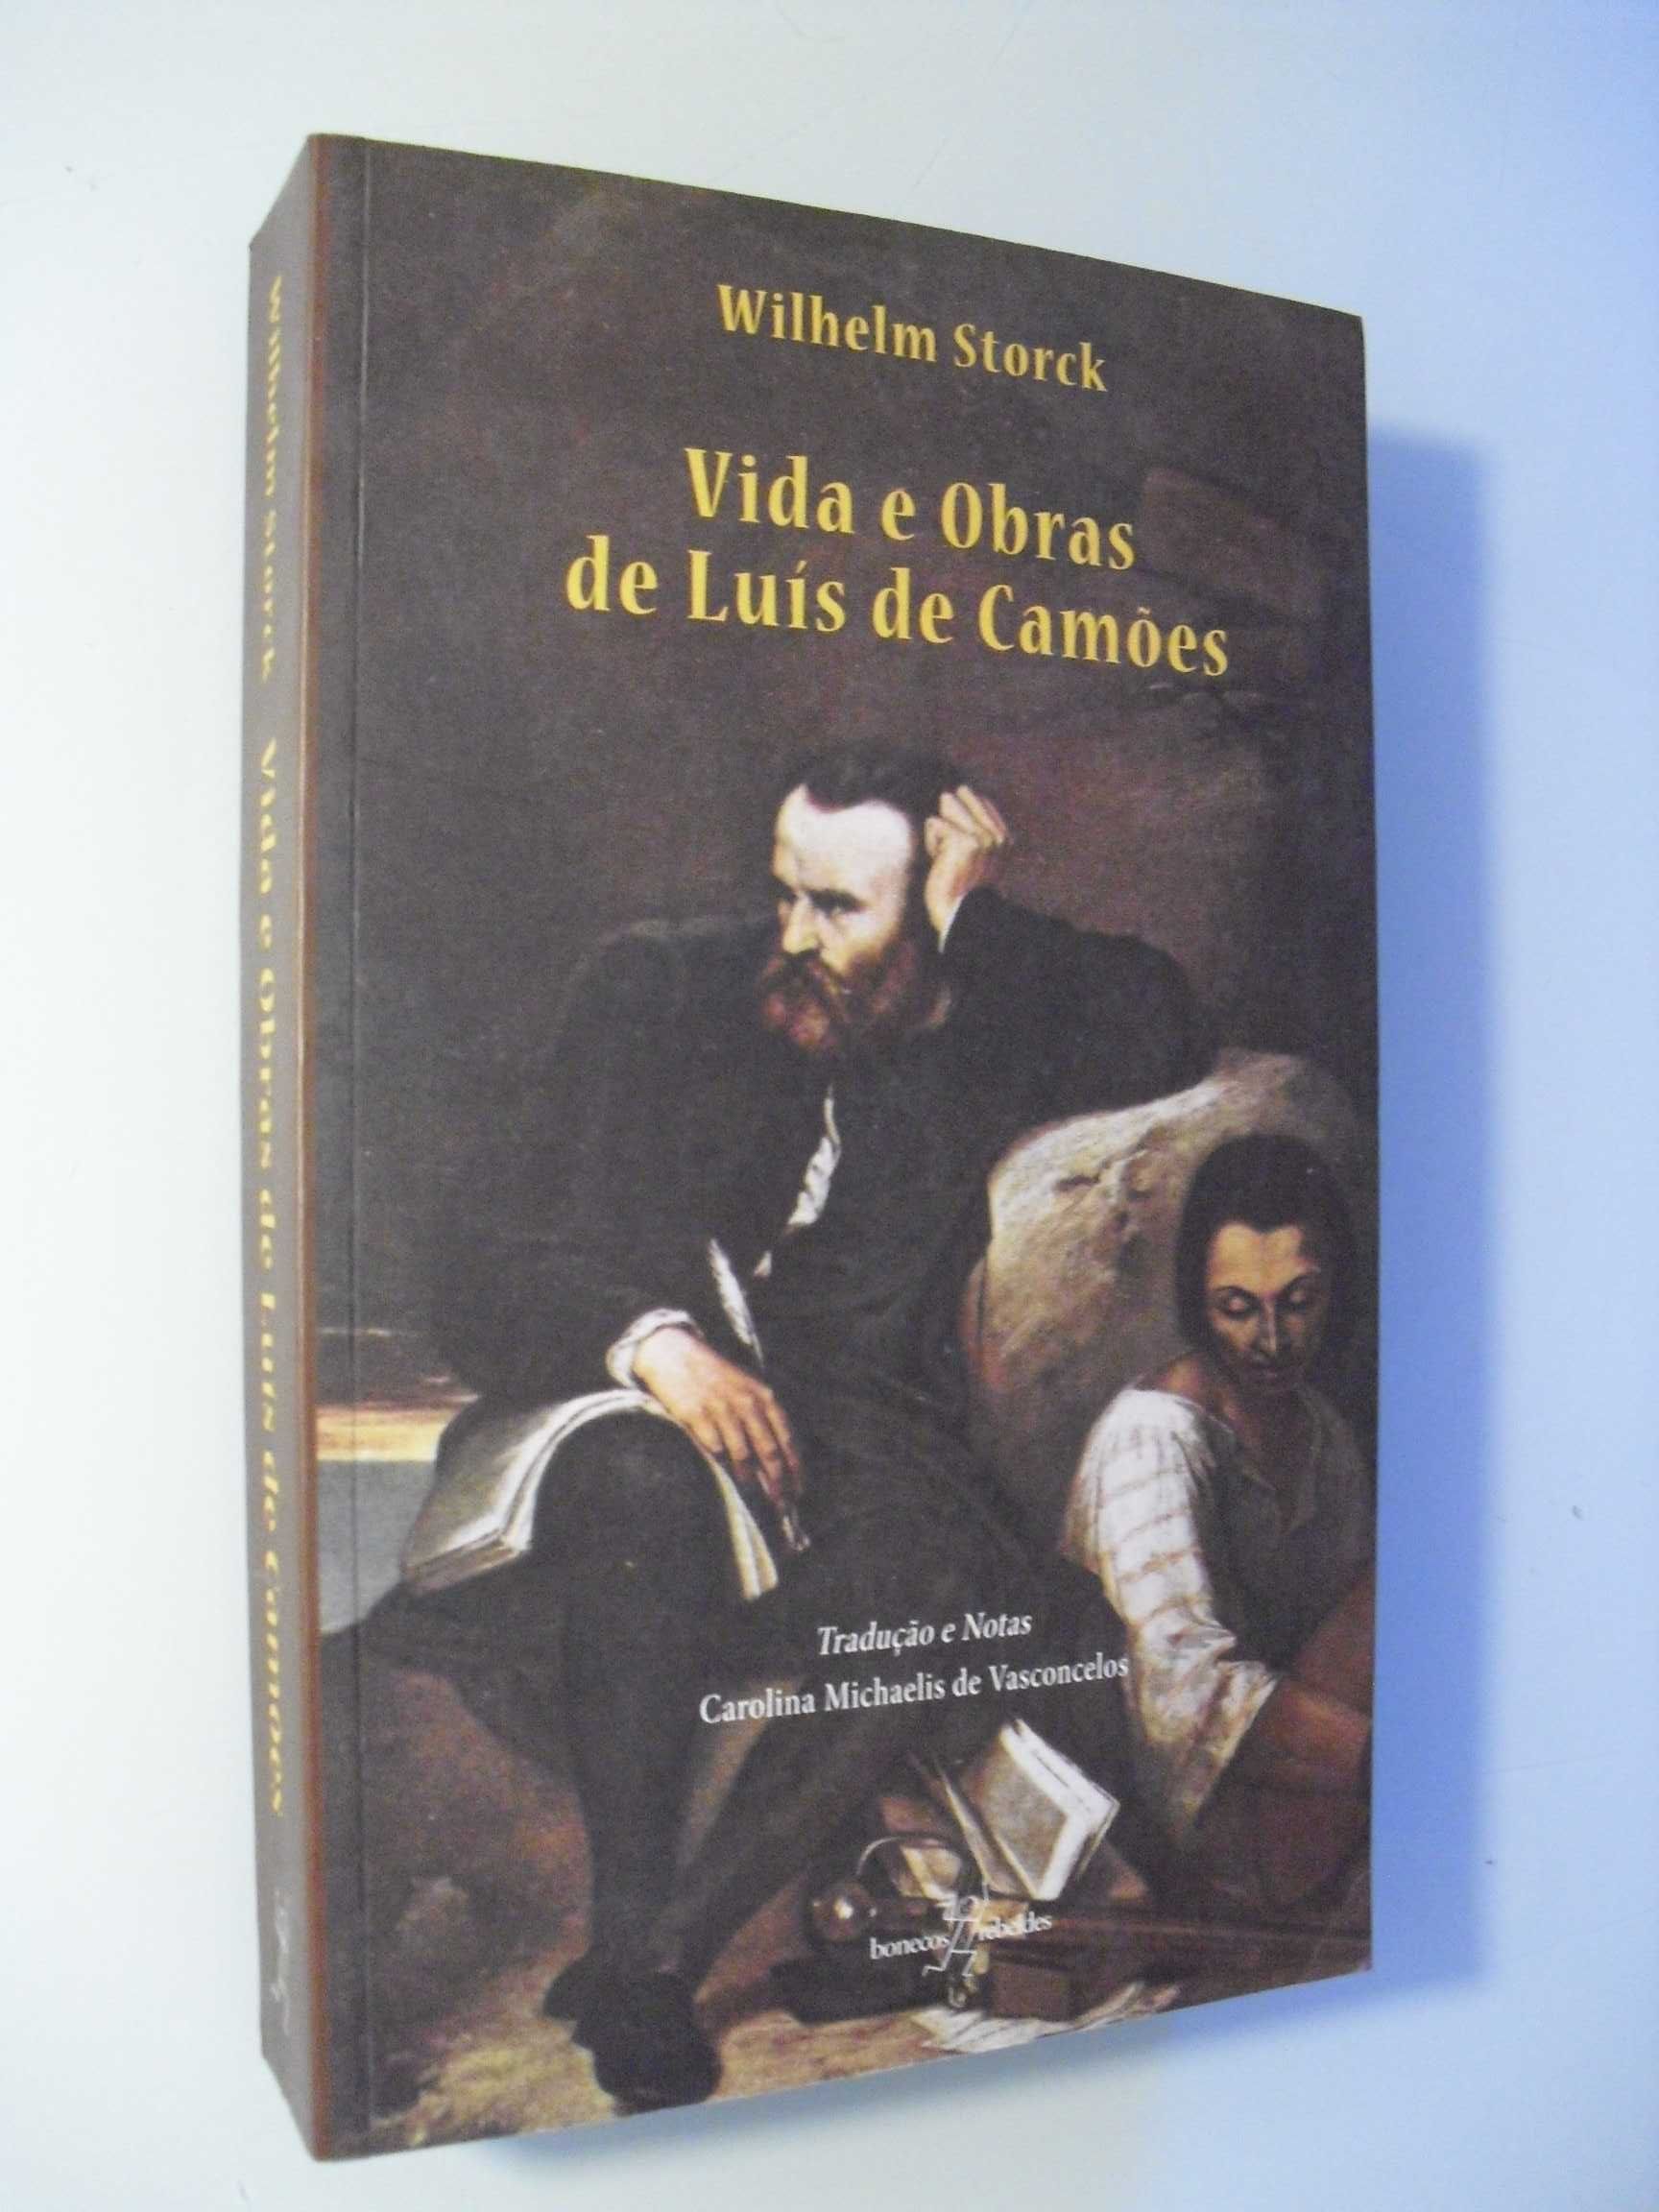 Stork (Wilhem);Vidas e Obras de Luís de Camões